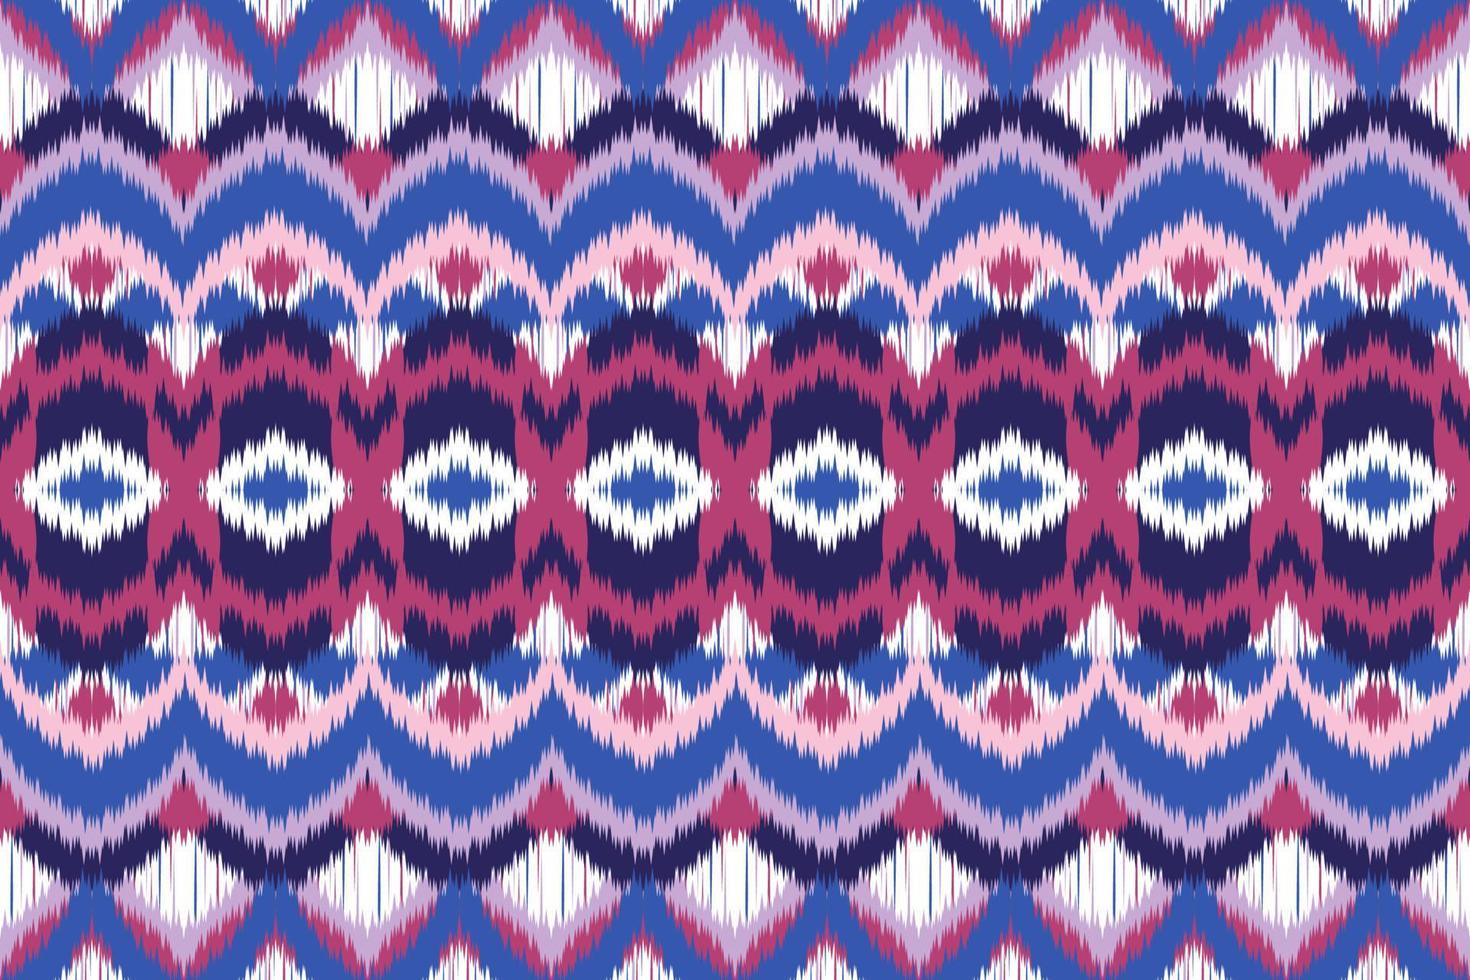 diseño de patrón de fondo geométrico abstracto, patrón de blusa, patrón de alfombra, estilo retro asiático. vector